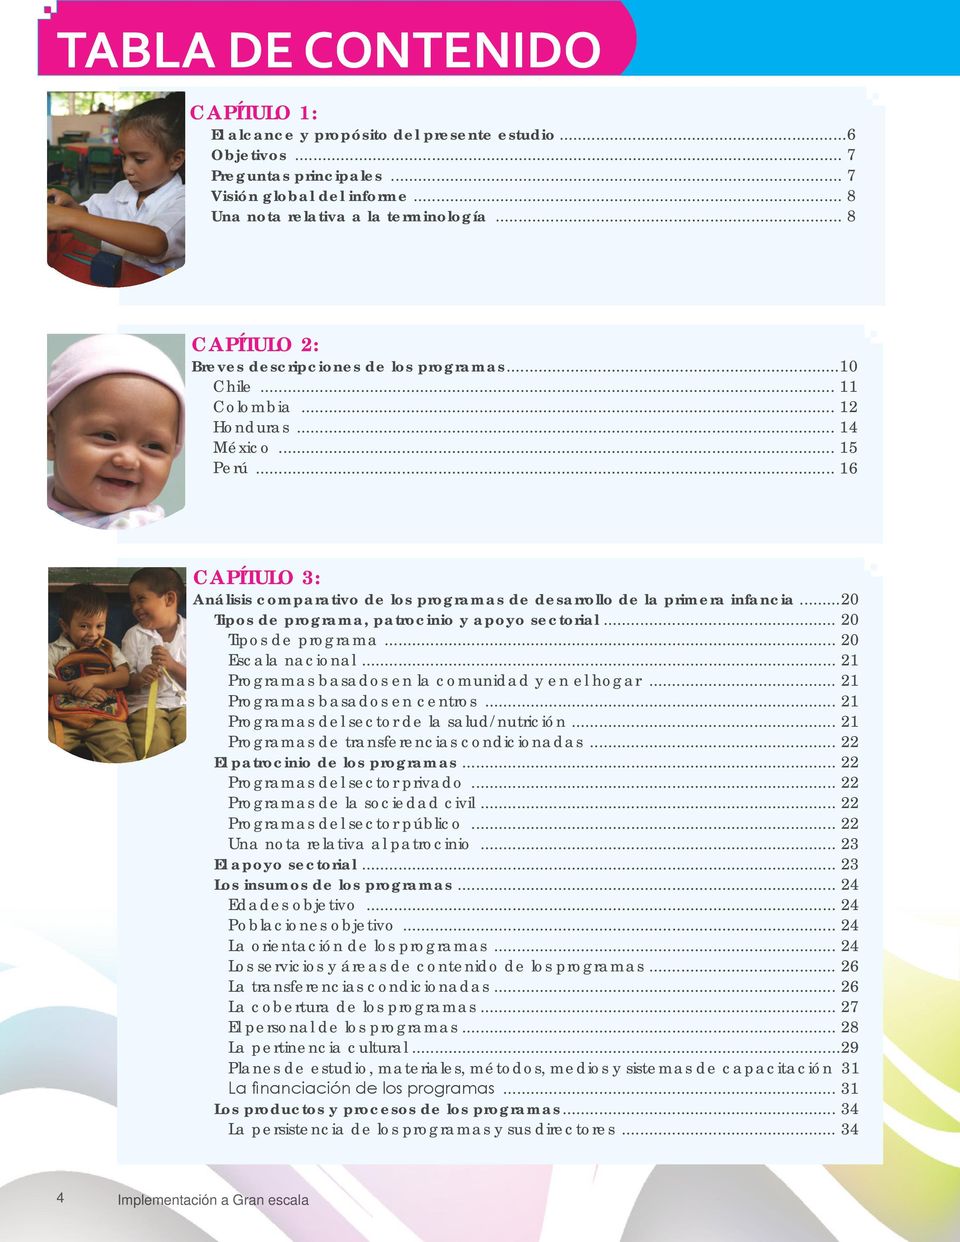 .. 16 CAPÍTULO 3: Análisis comparativo de los programas de desarrollo de la primera infancia...20 Tipos de programa, patrocinio y apoyo sectorial... 20 Tipos de programa... 20 Escala nacional.